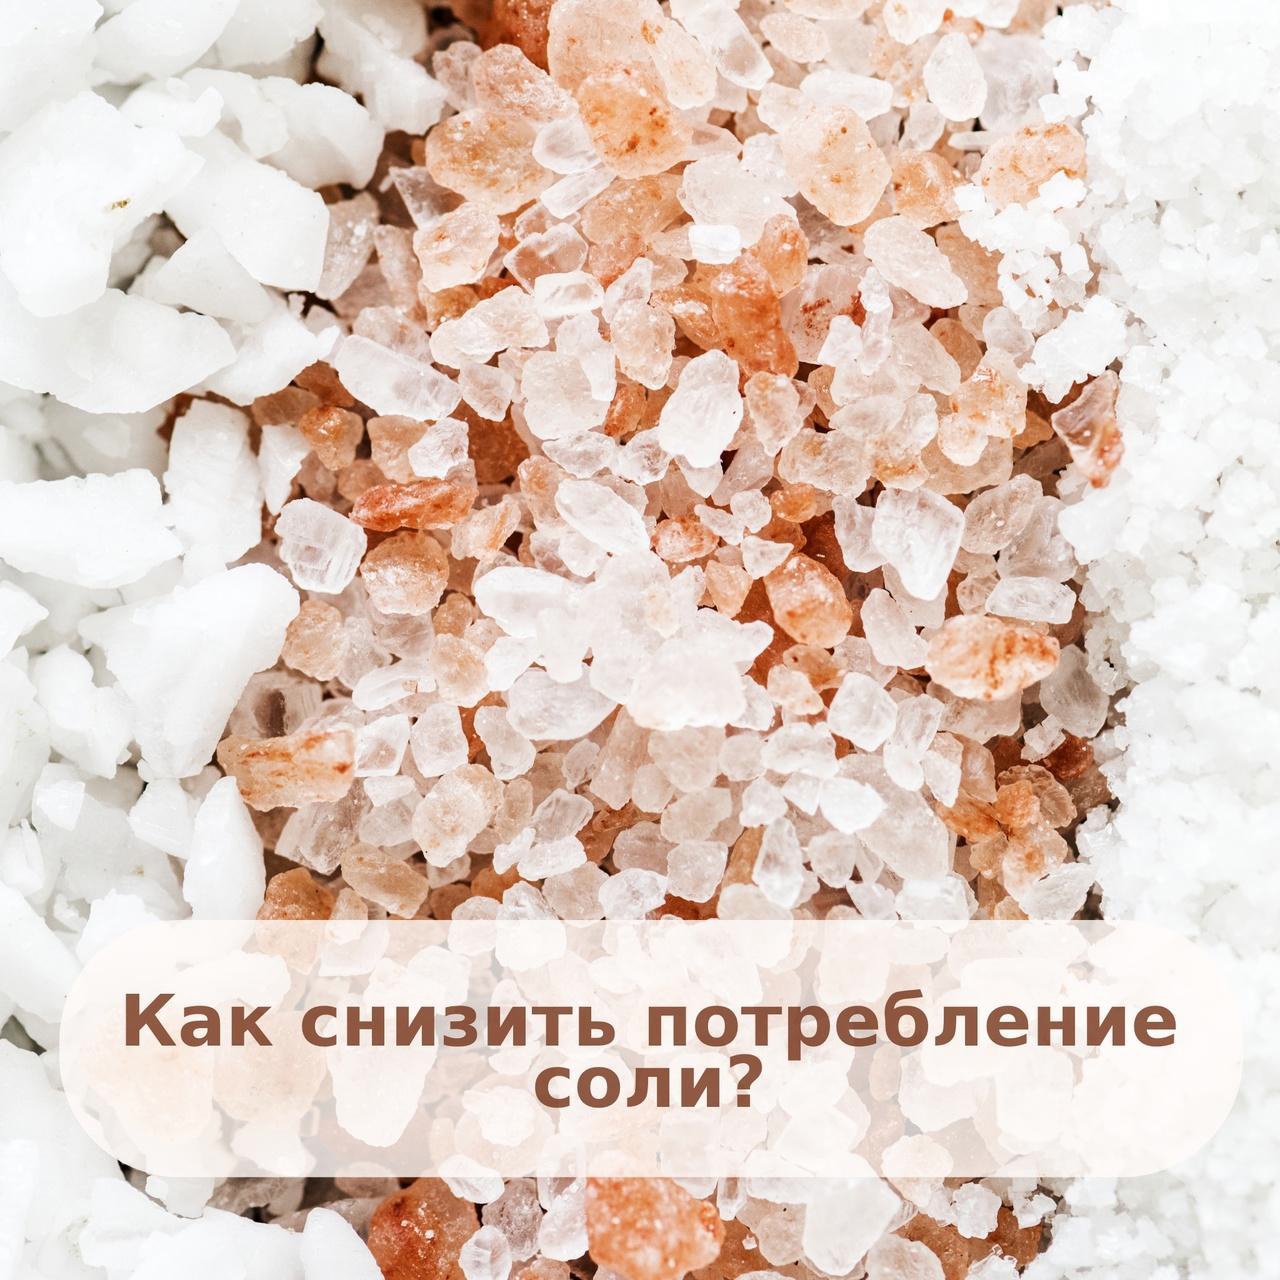 Неделя снижения потребления поваренной соли"
itemprop=